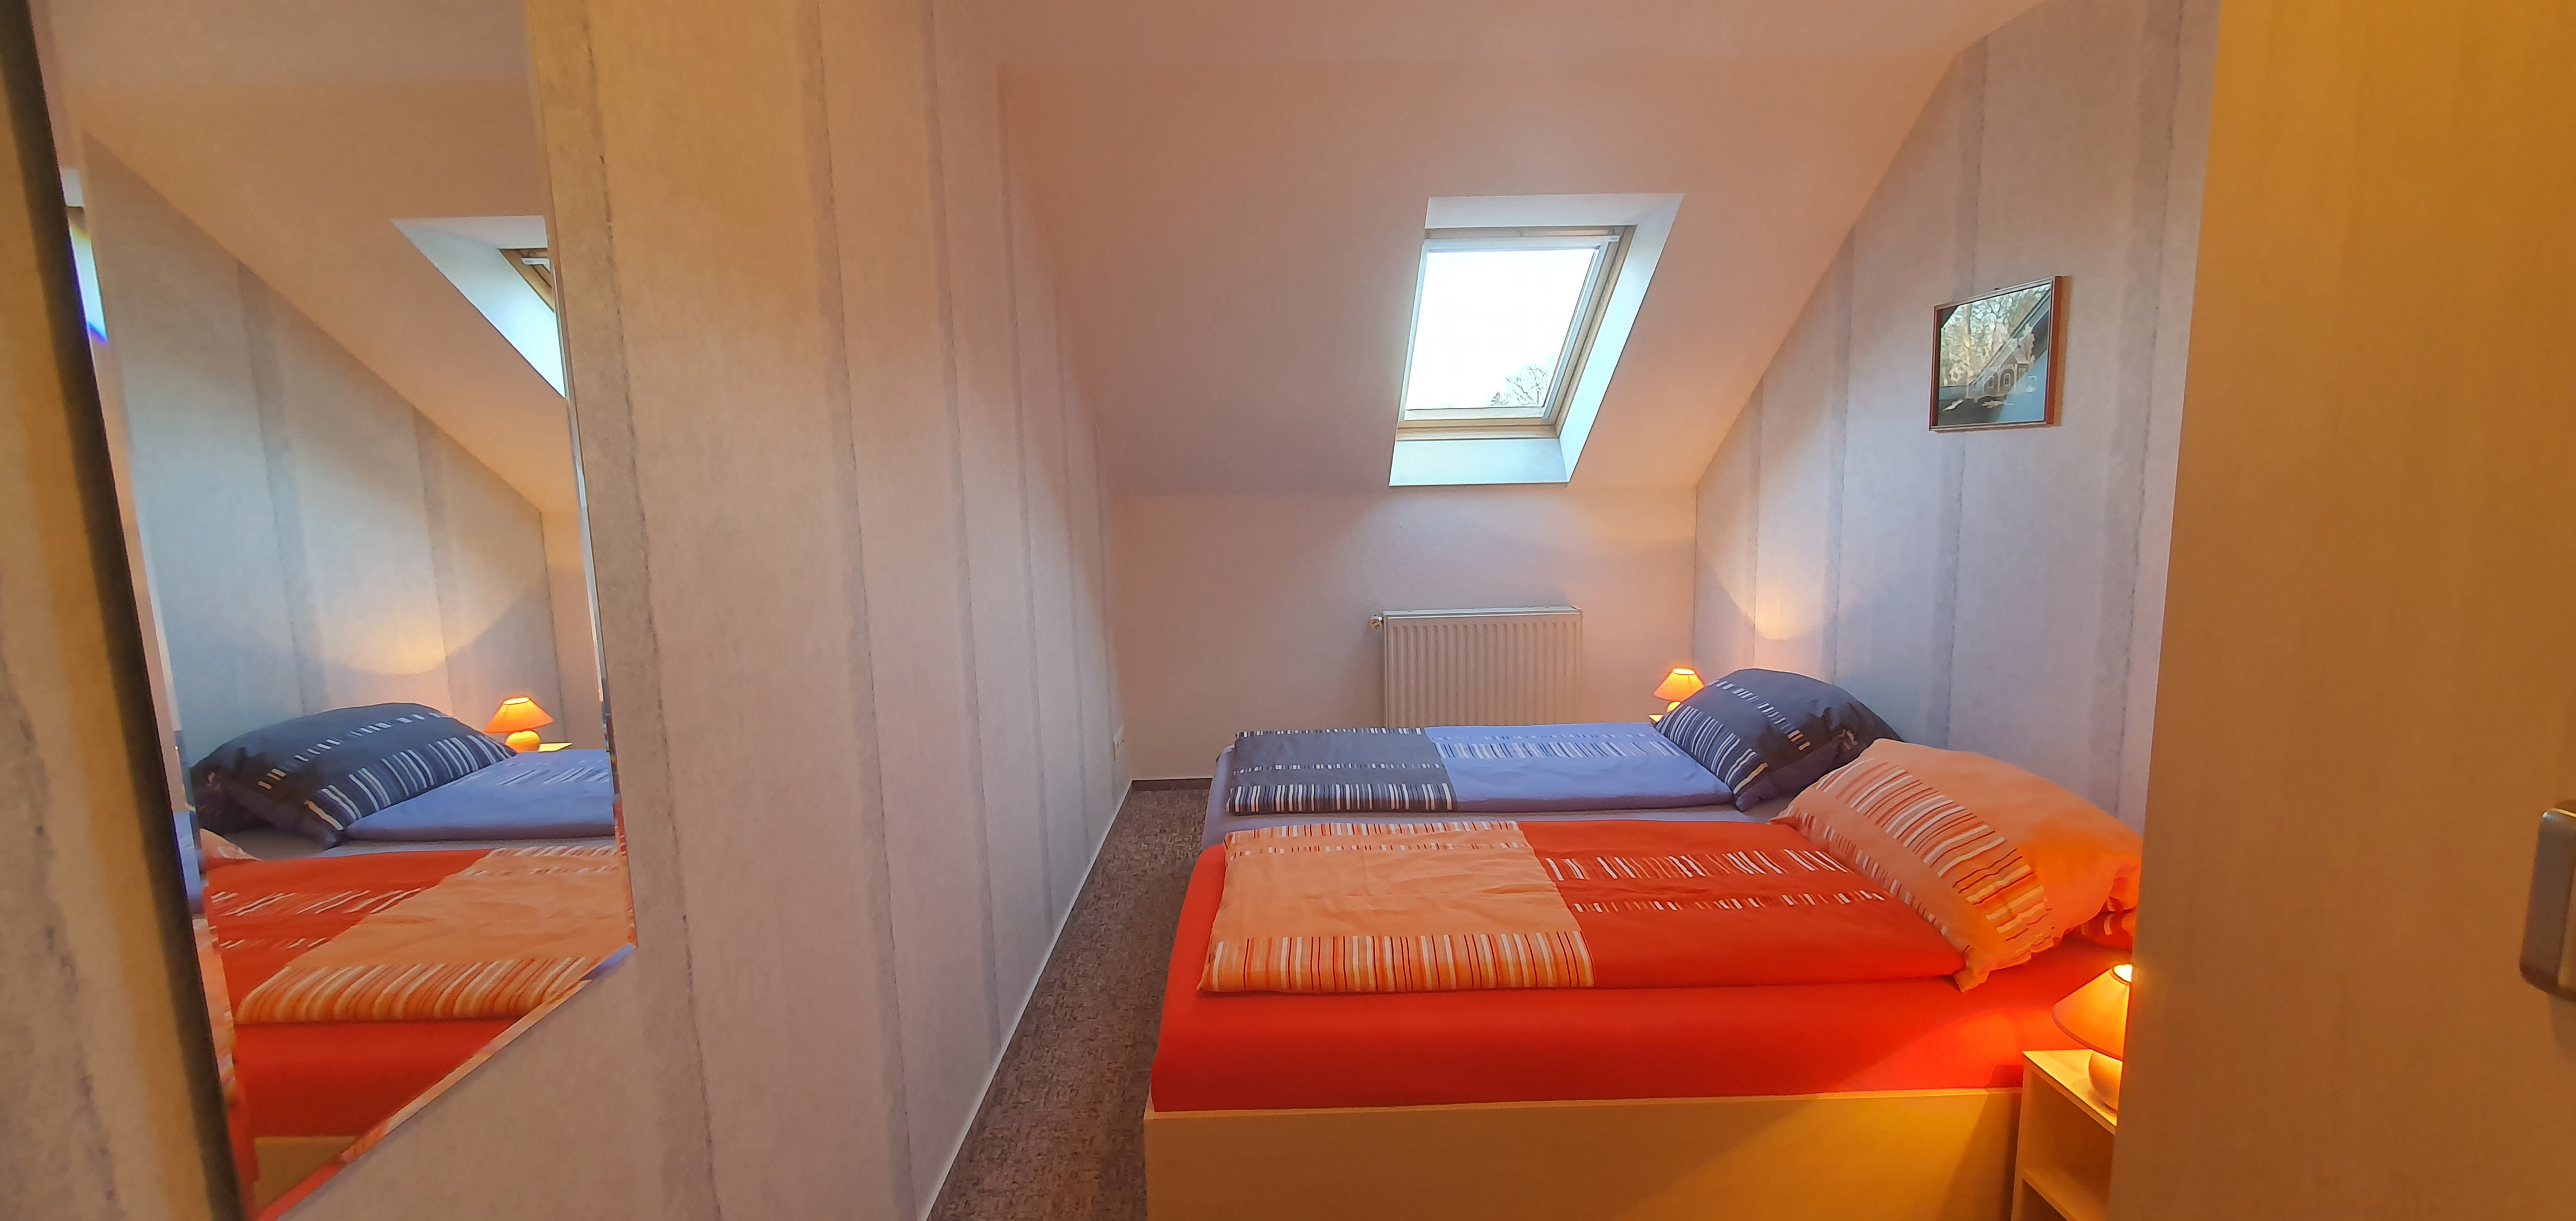 Bild: Schlafzimmer mit Doppelbett der Ferienwohnung